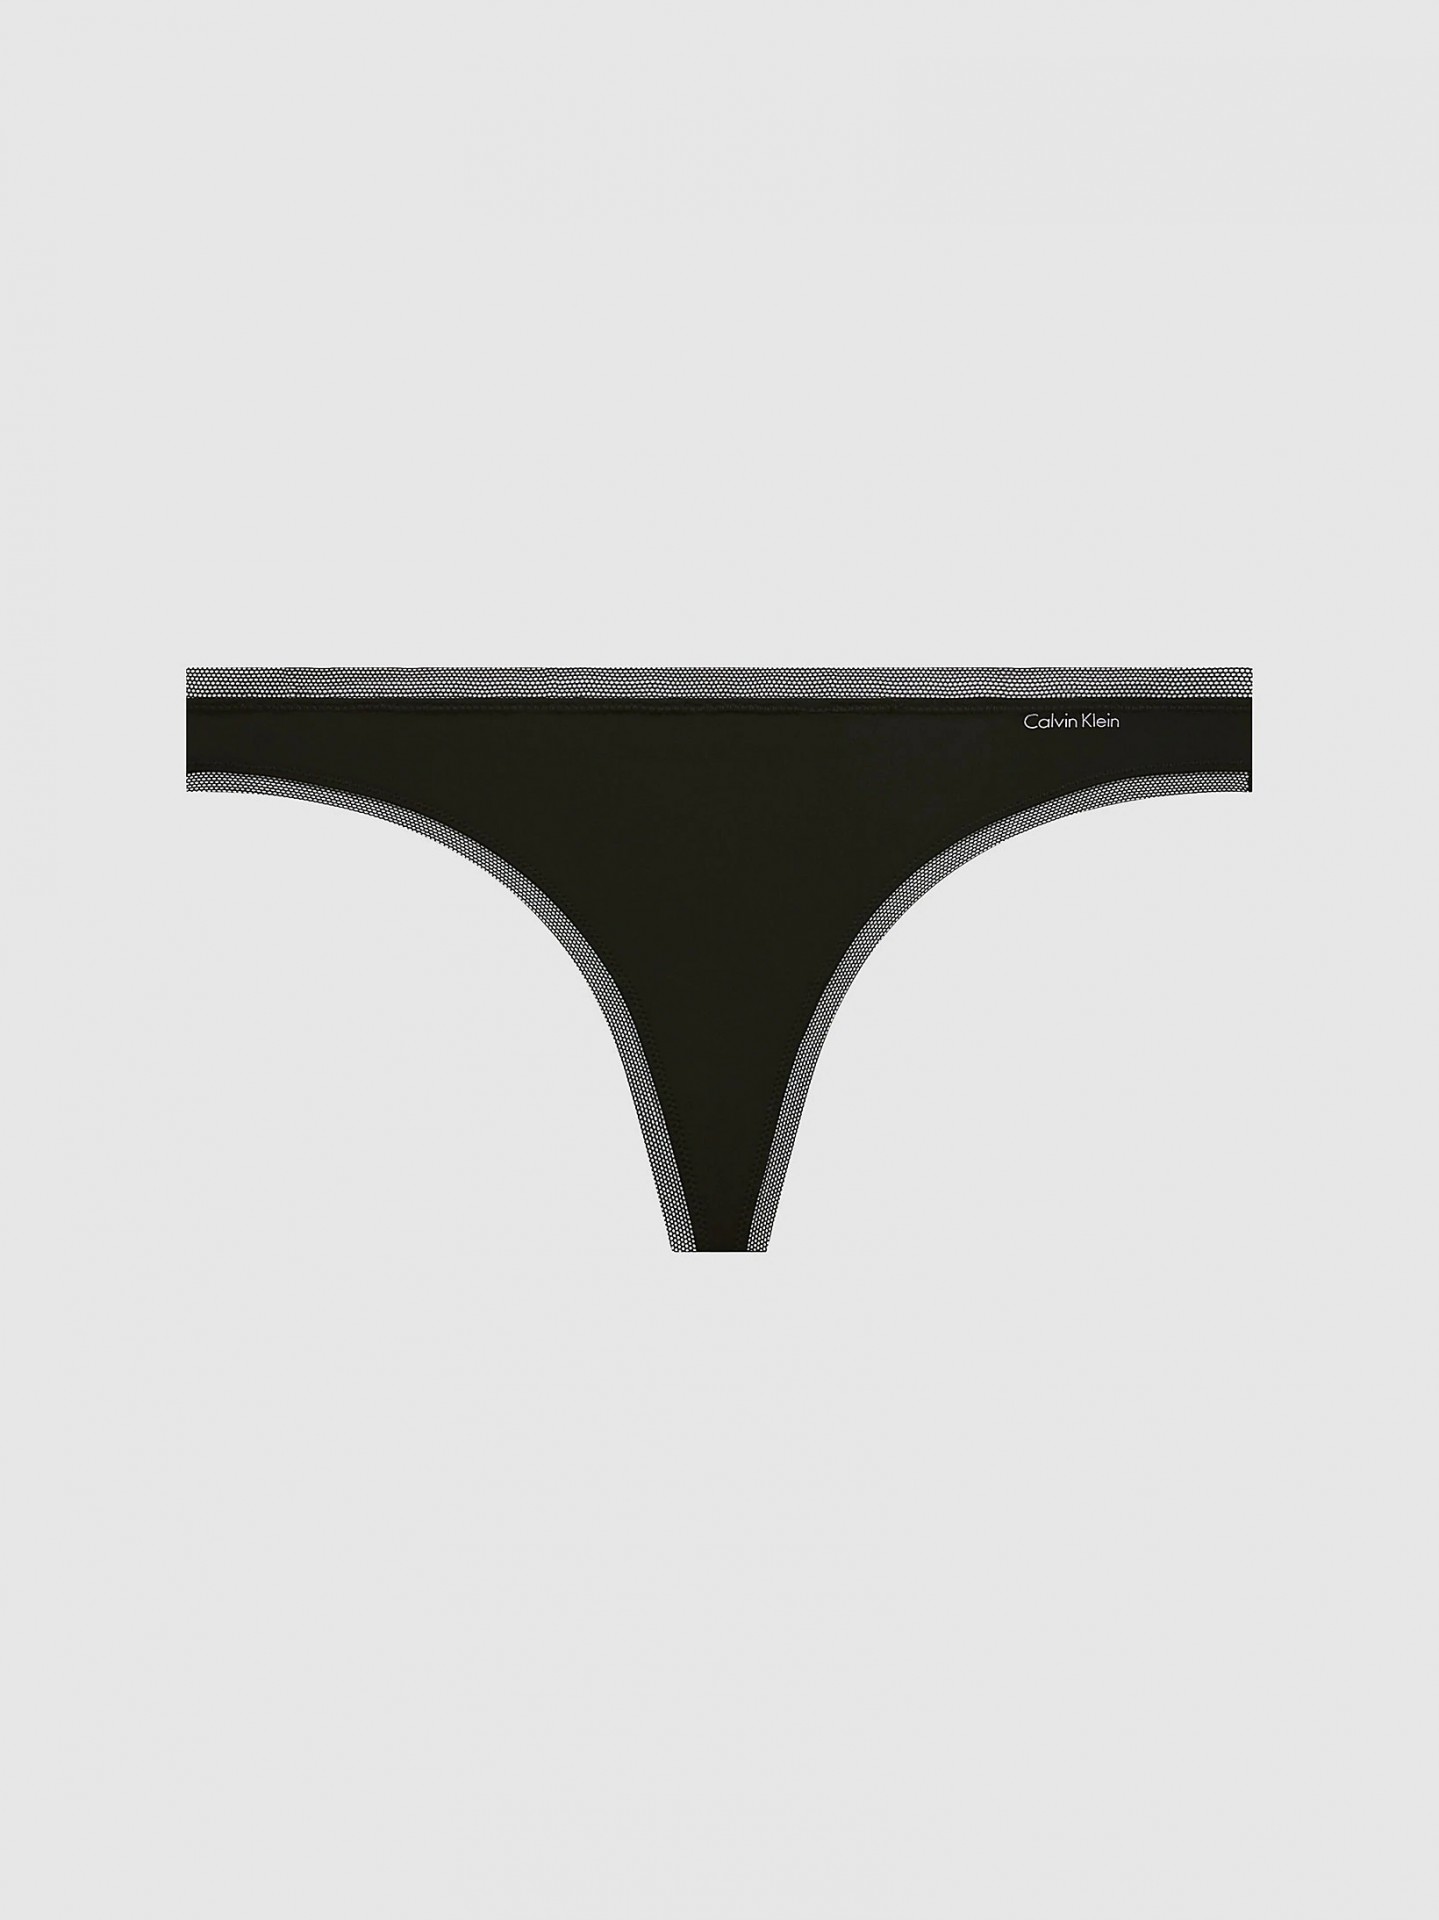 Tanga Calvin Klein (QF1666E-02), Velikost M, Barva černá